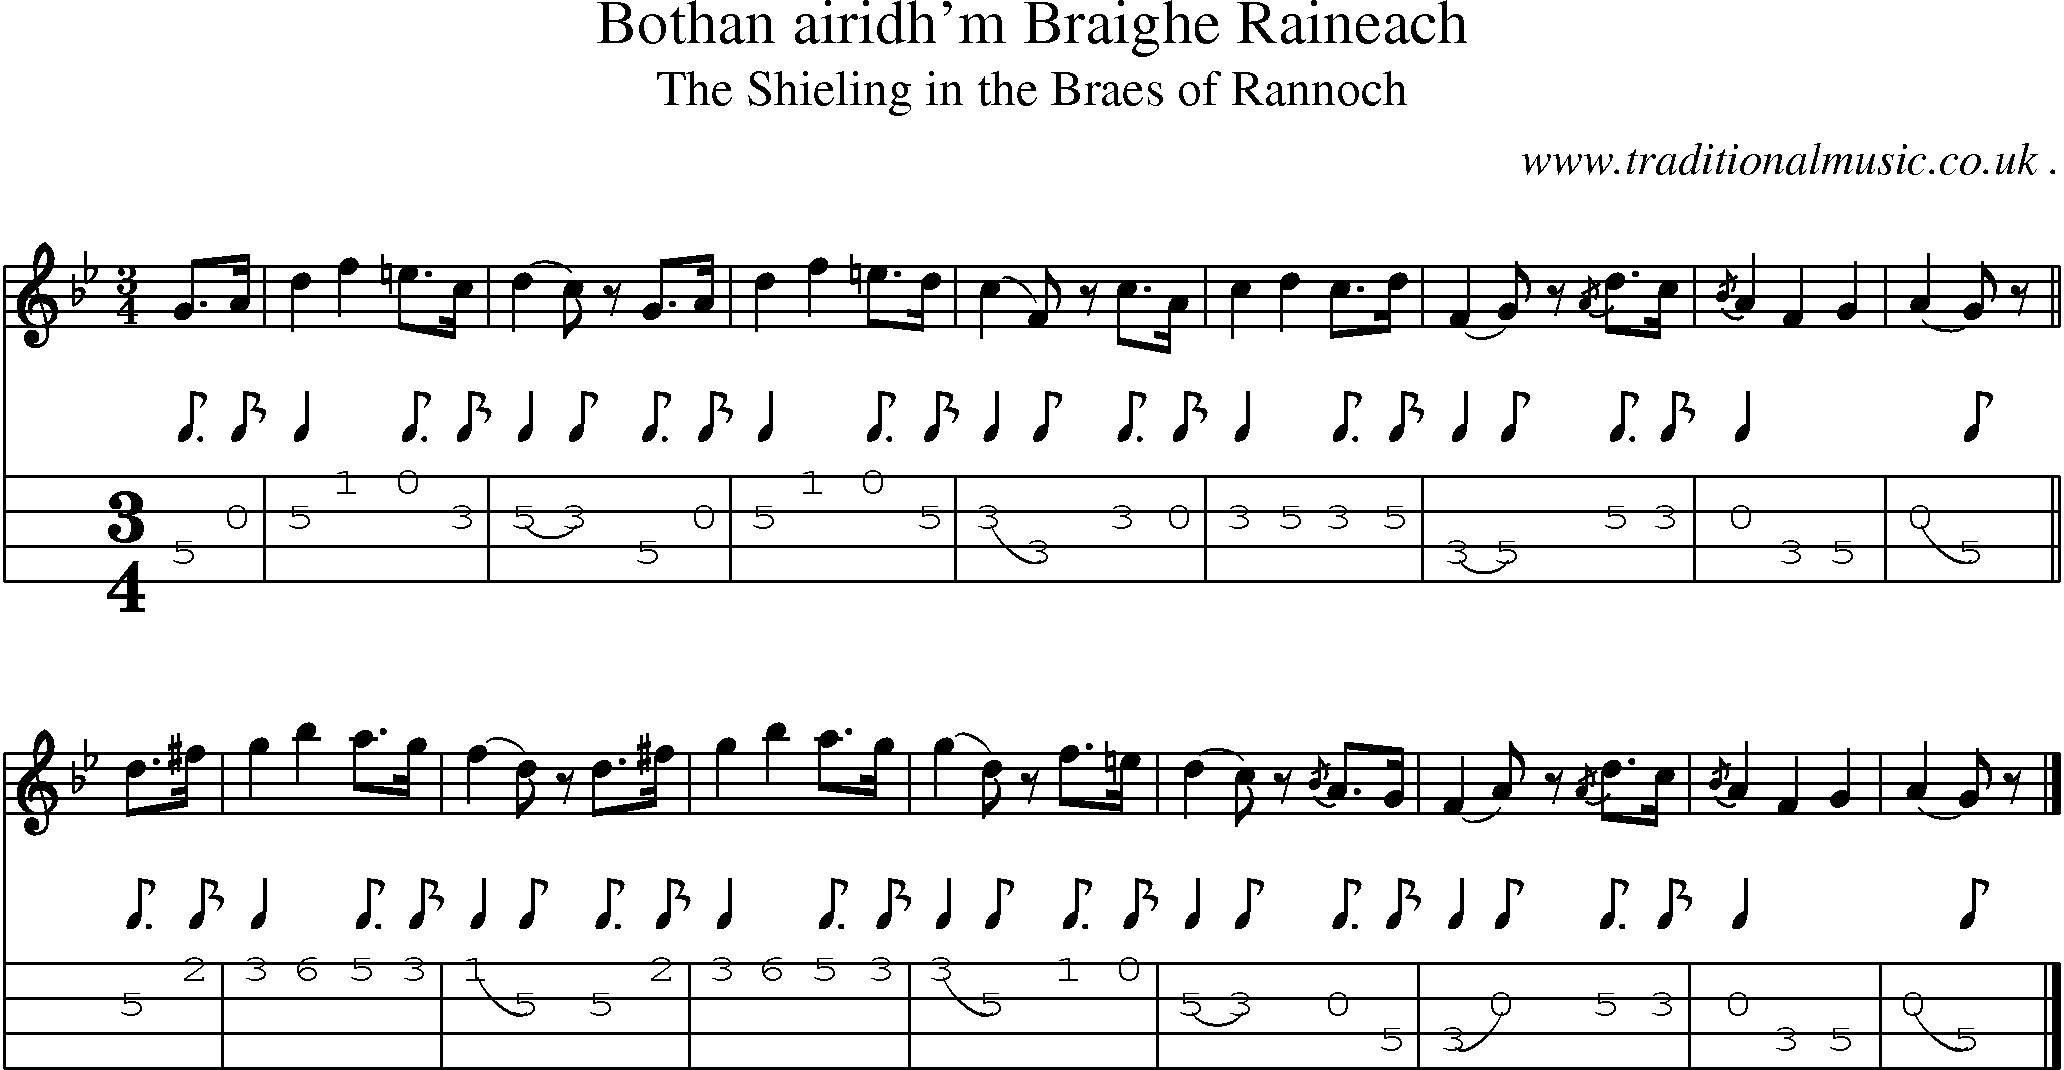 Sheet-music  score, Chords and Mandolin Tabs for Bothan Airidhm Braighe Raineach